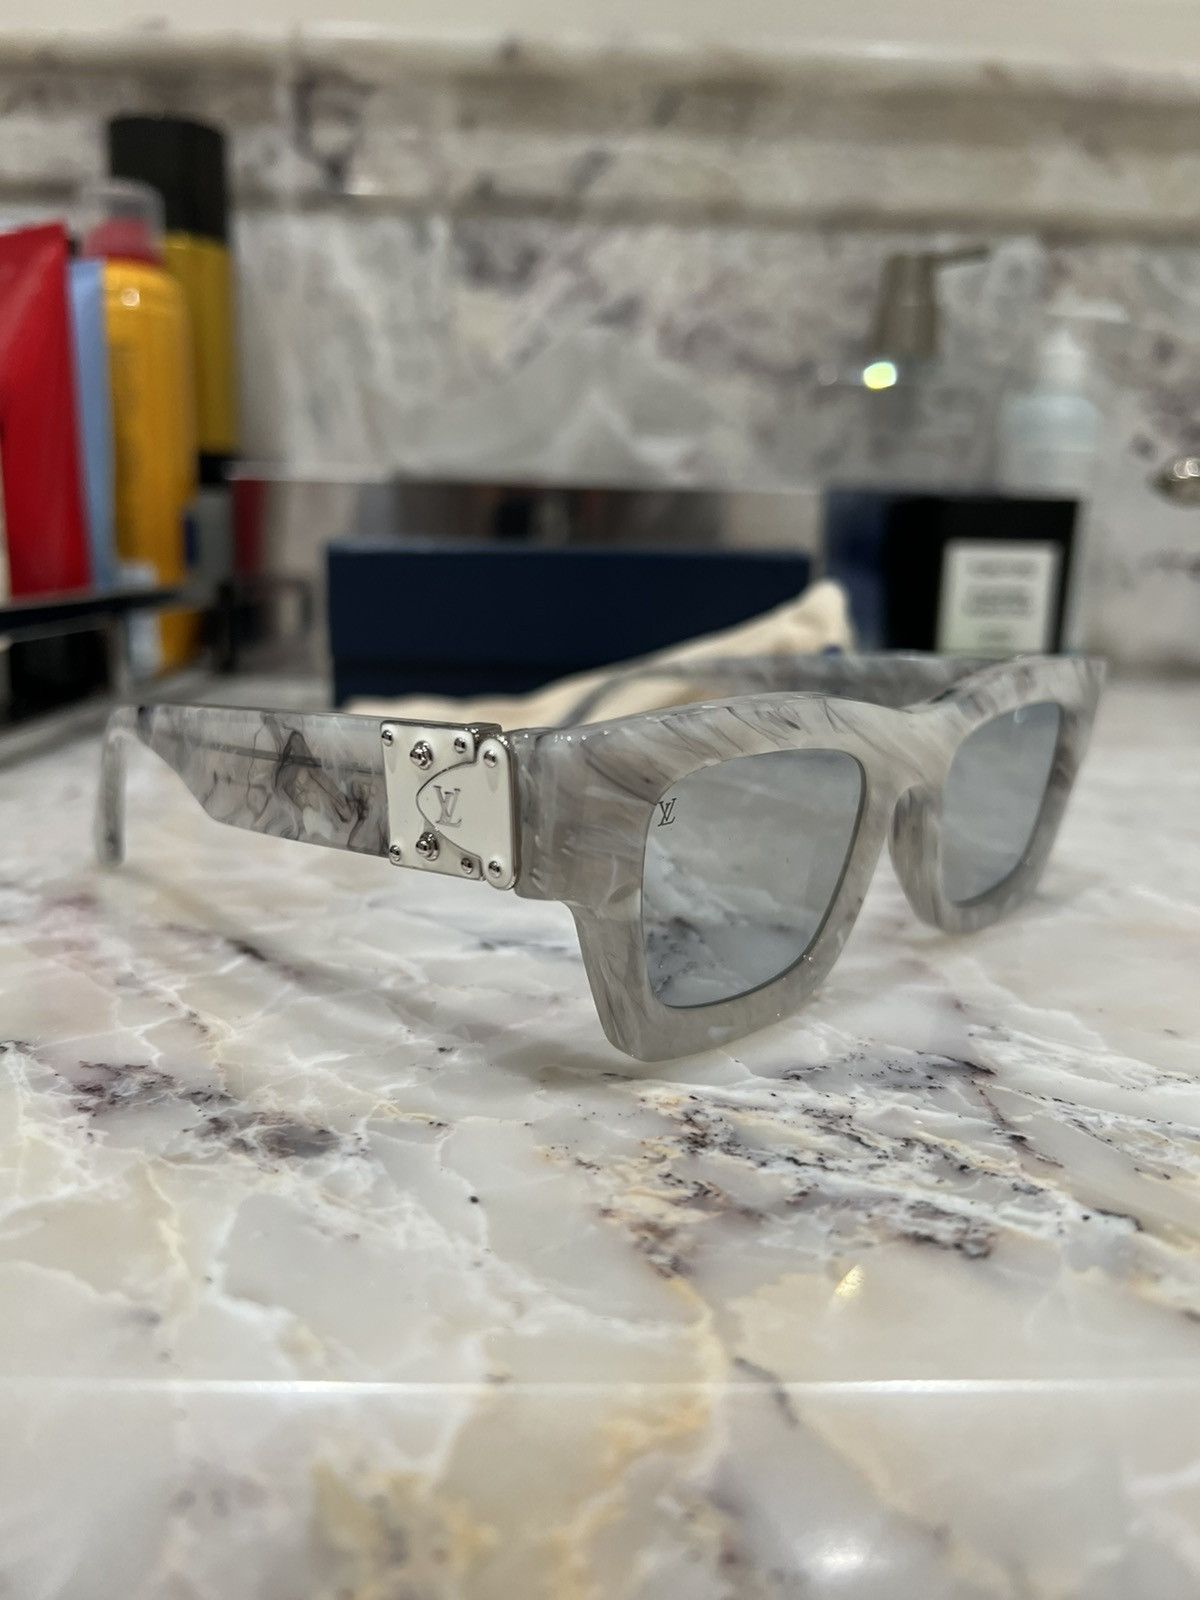 Louis Vuitton Millionaire Sunglasses 1.1 For Salesman